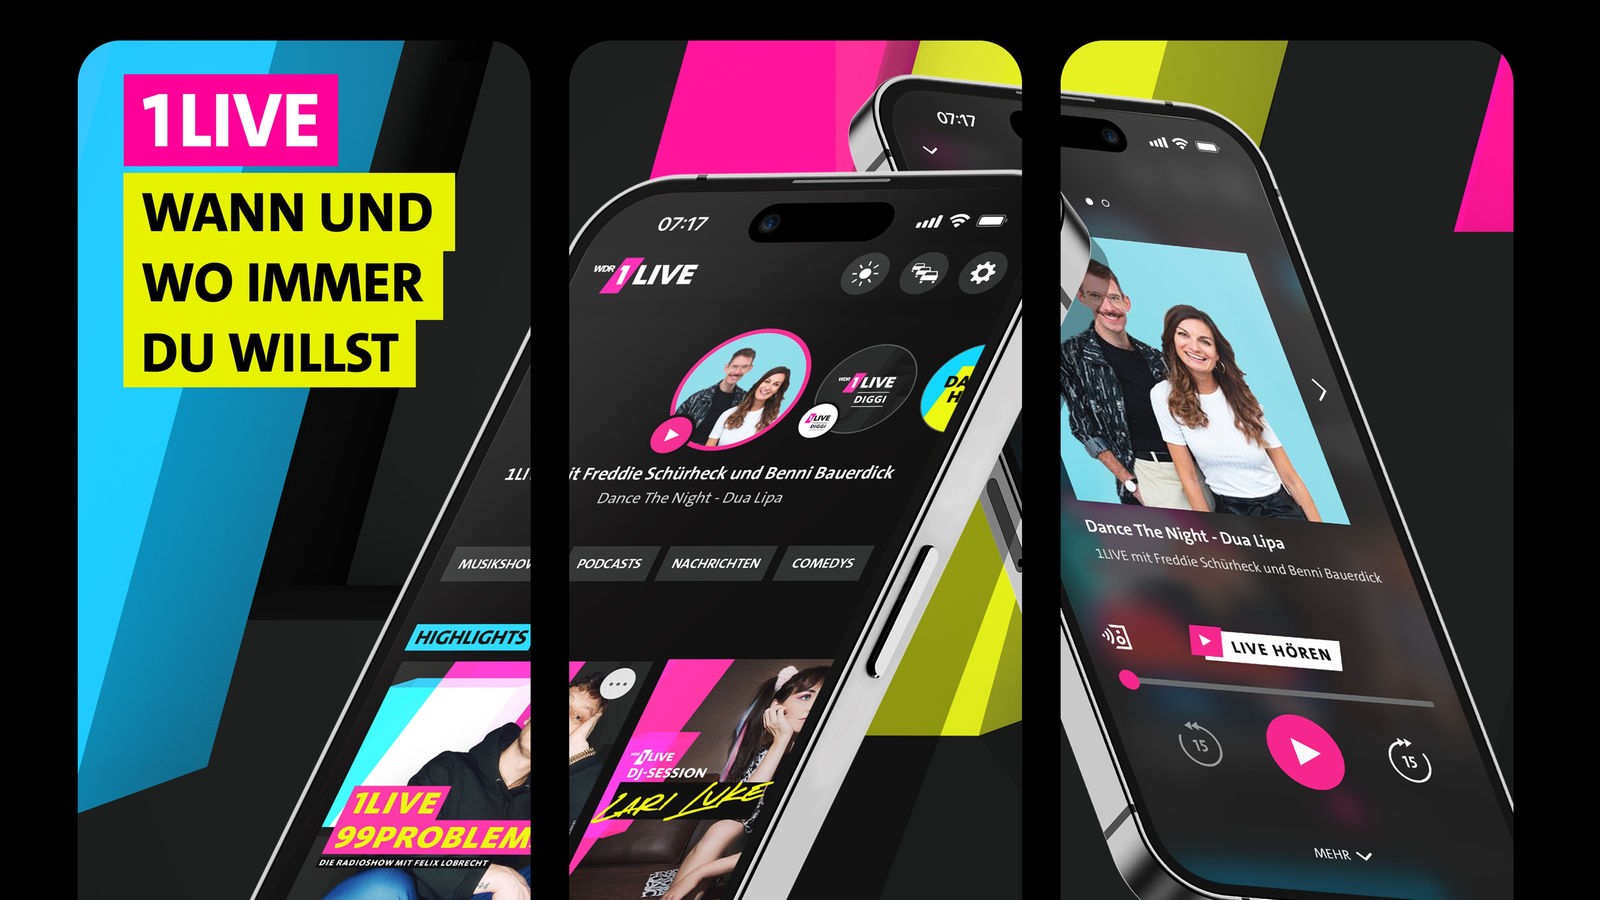 Die neue 1LIVE App Jetzt auf deinem Smartphone entdecken! - Radio